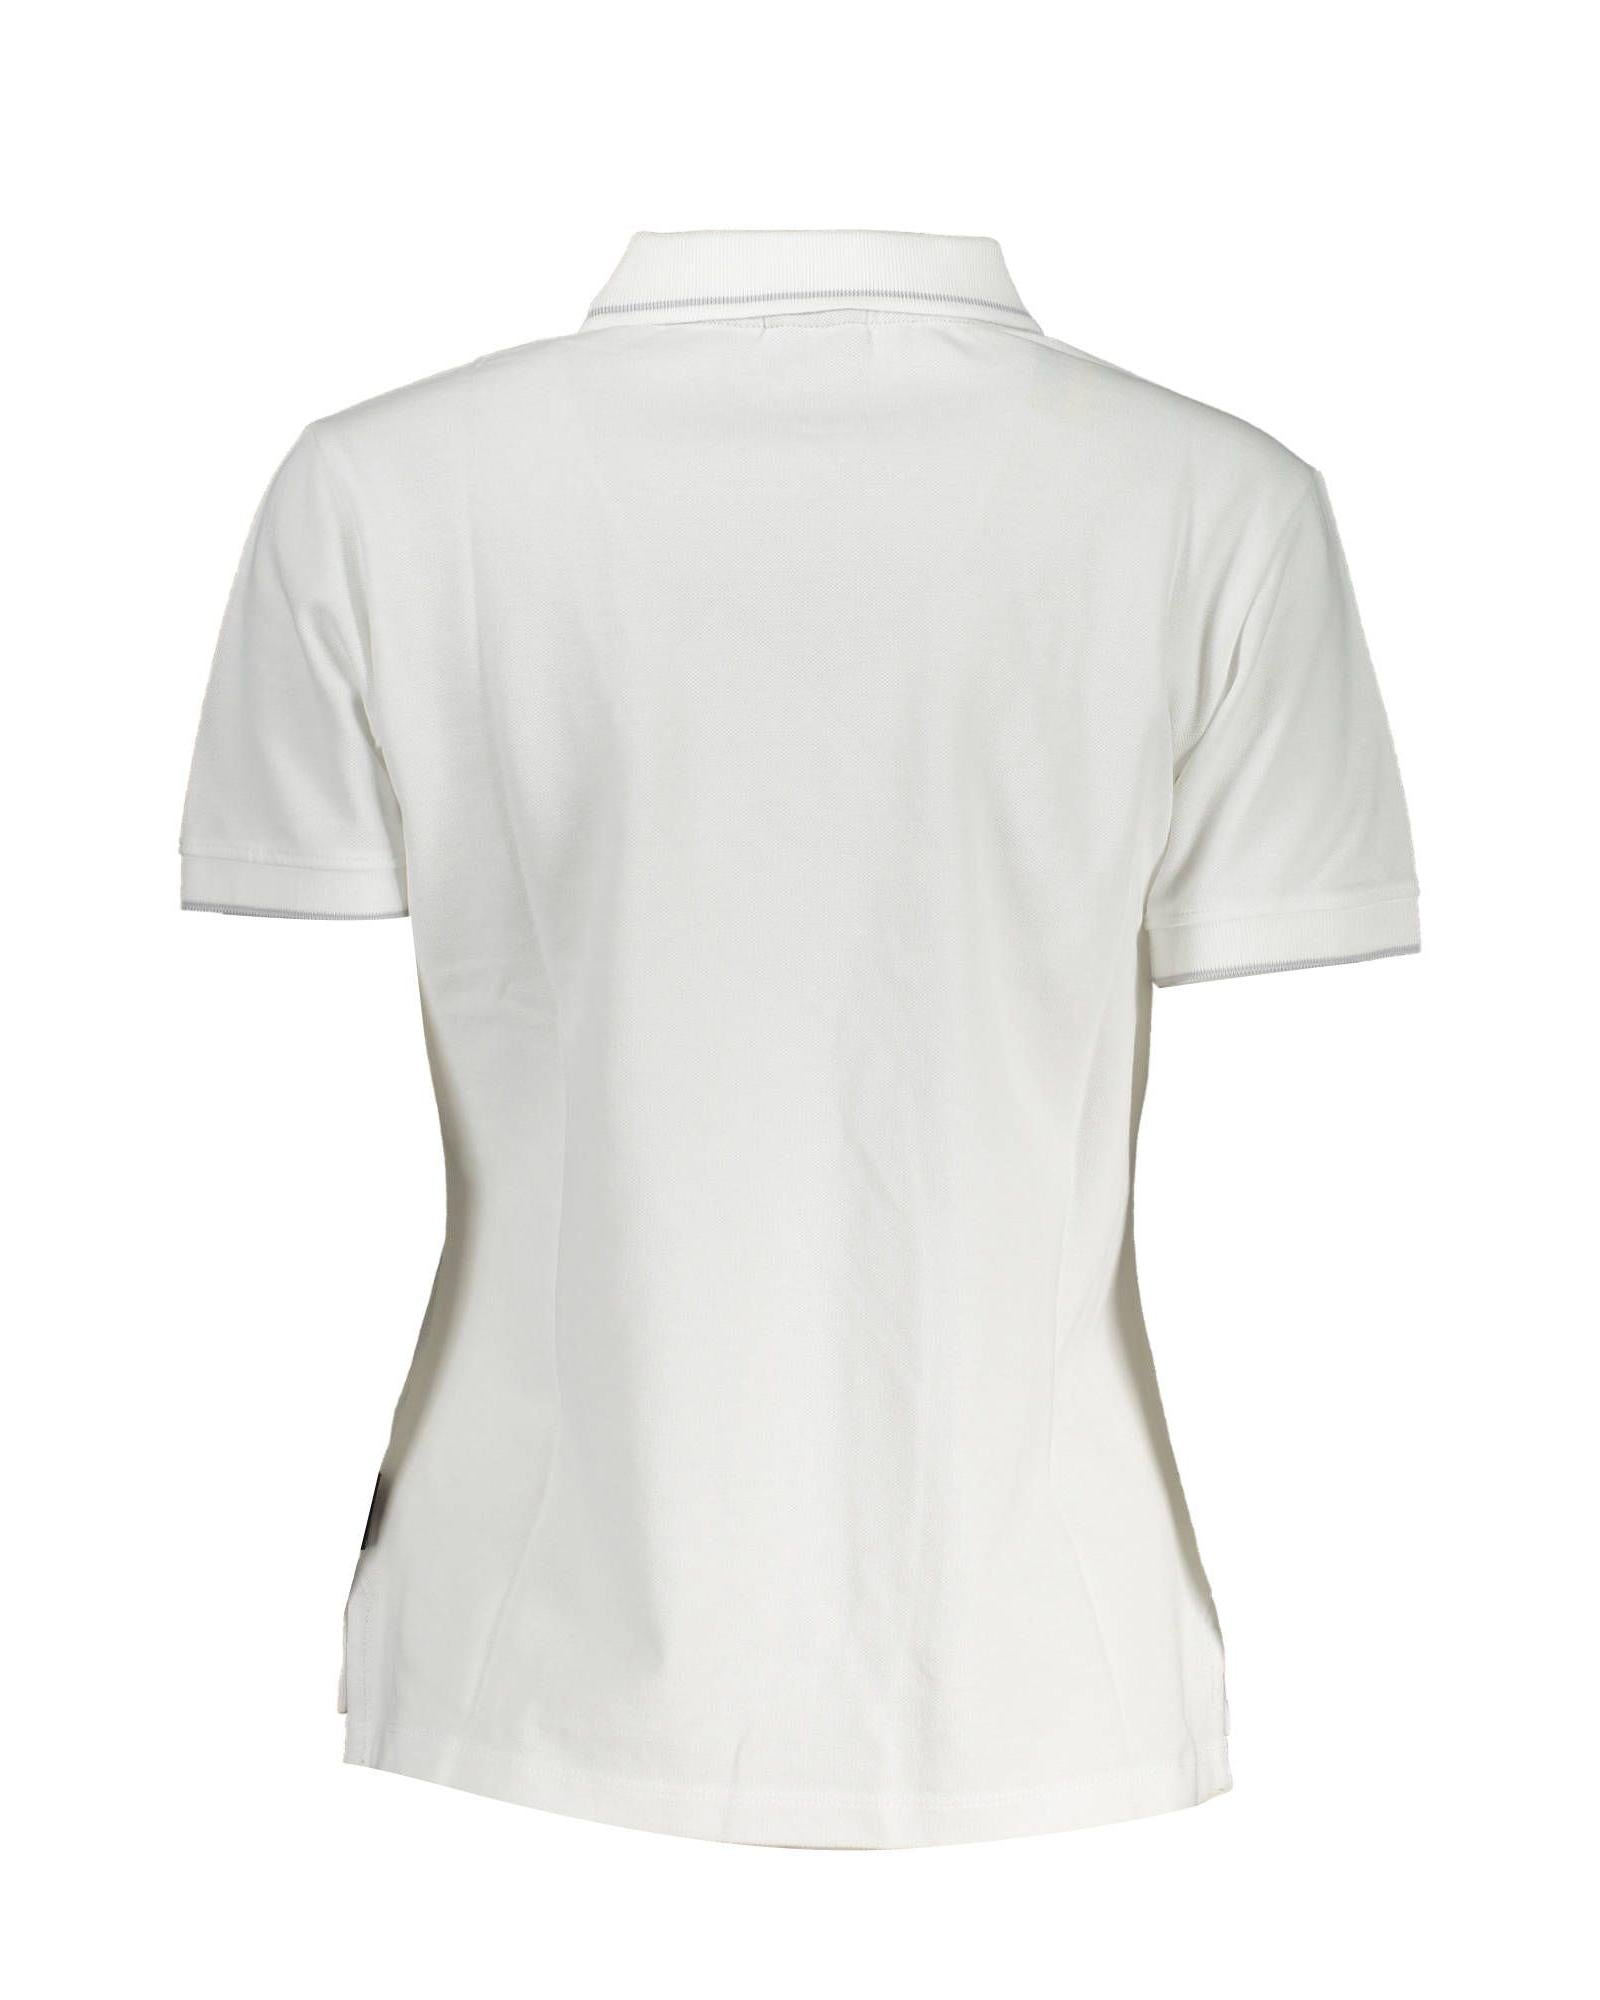 Men's White Cotton Polo Shirt - S